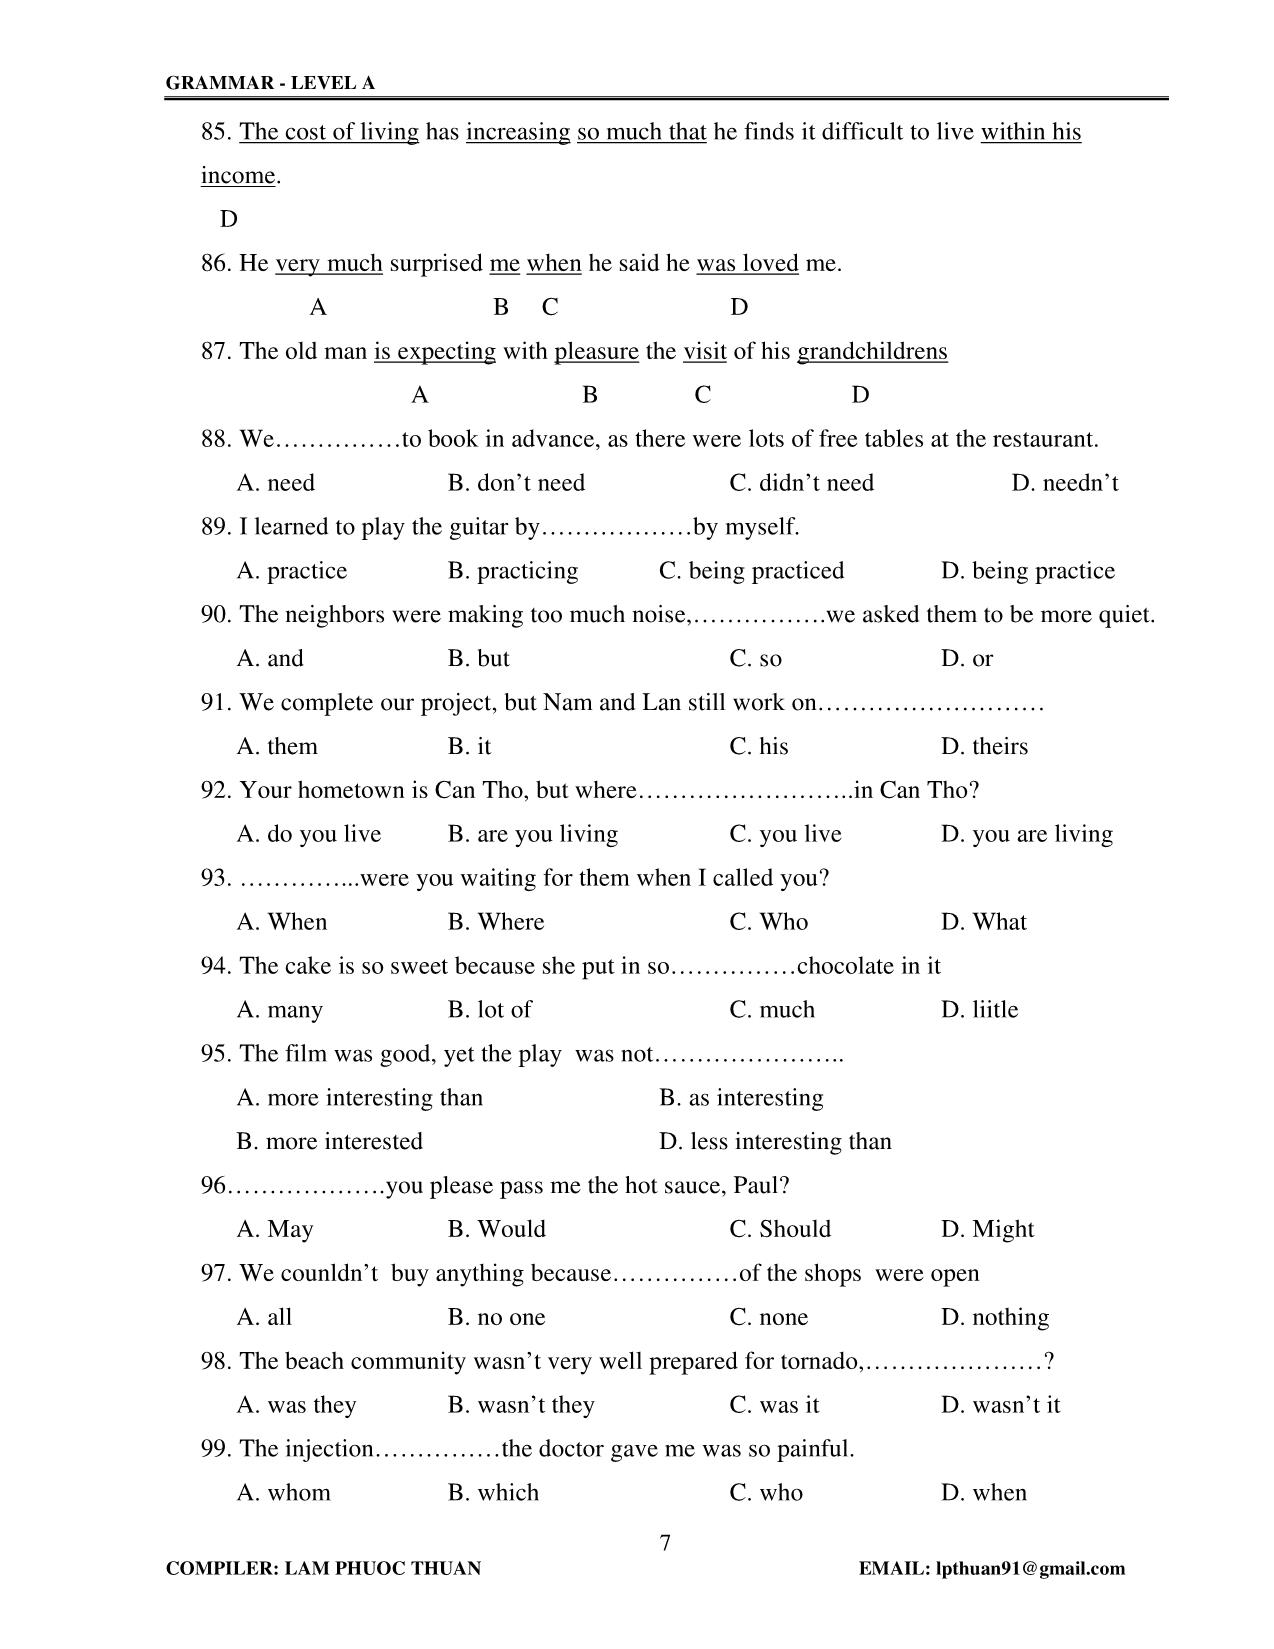 Tiếng Anh - Grammar level A trang 7